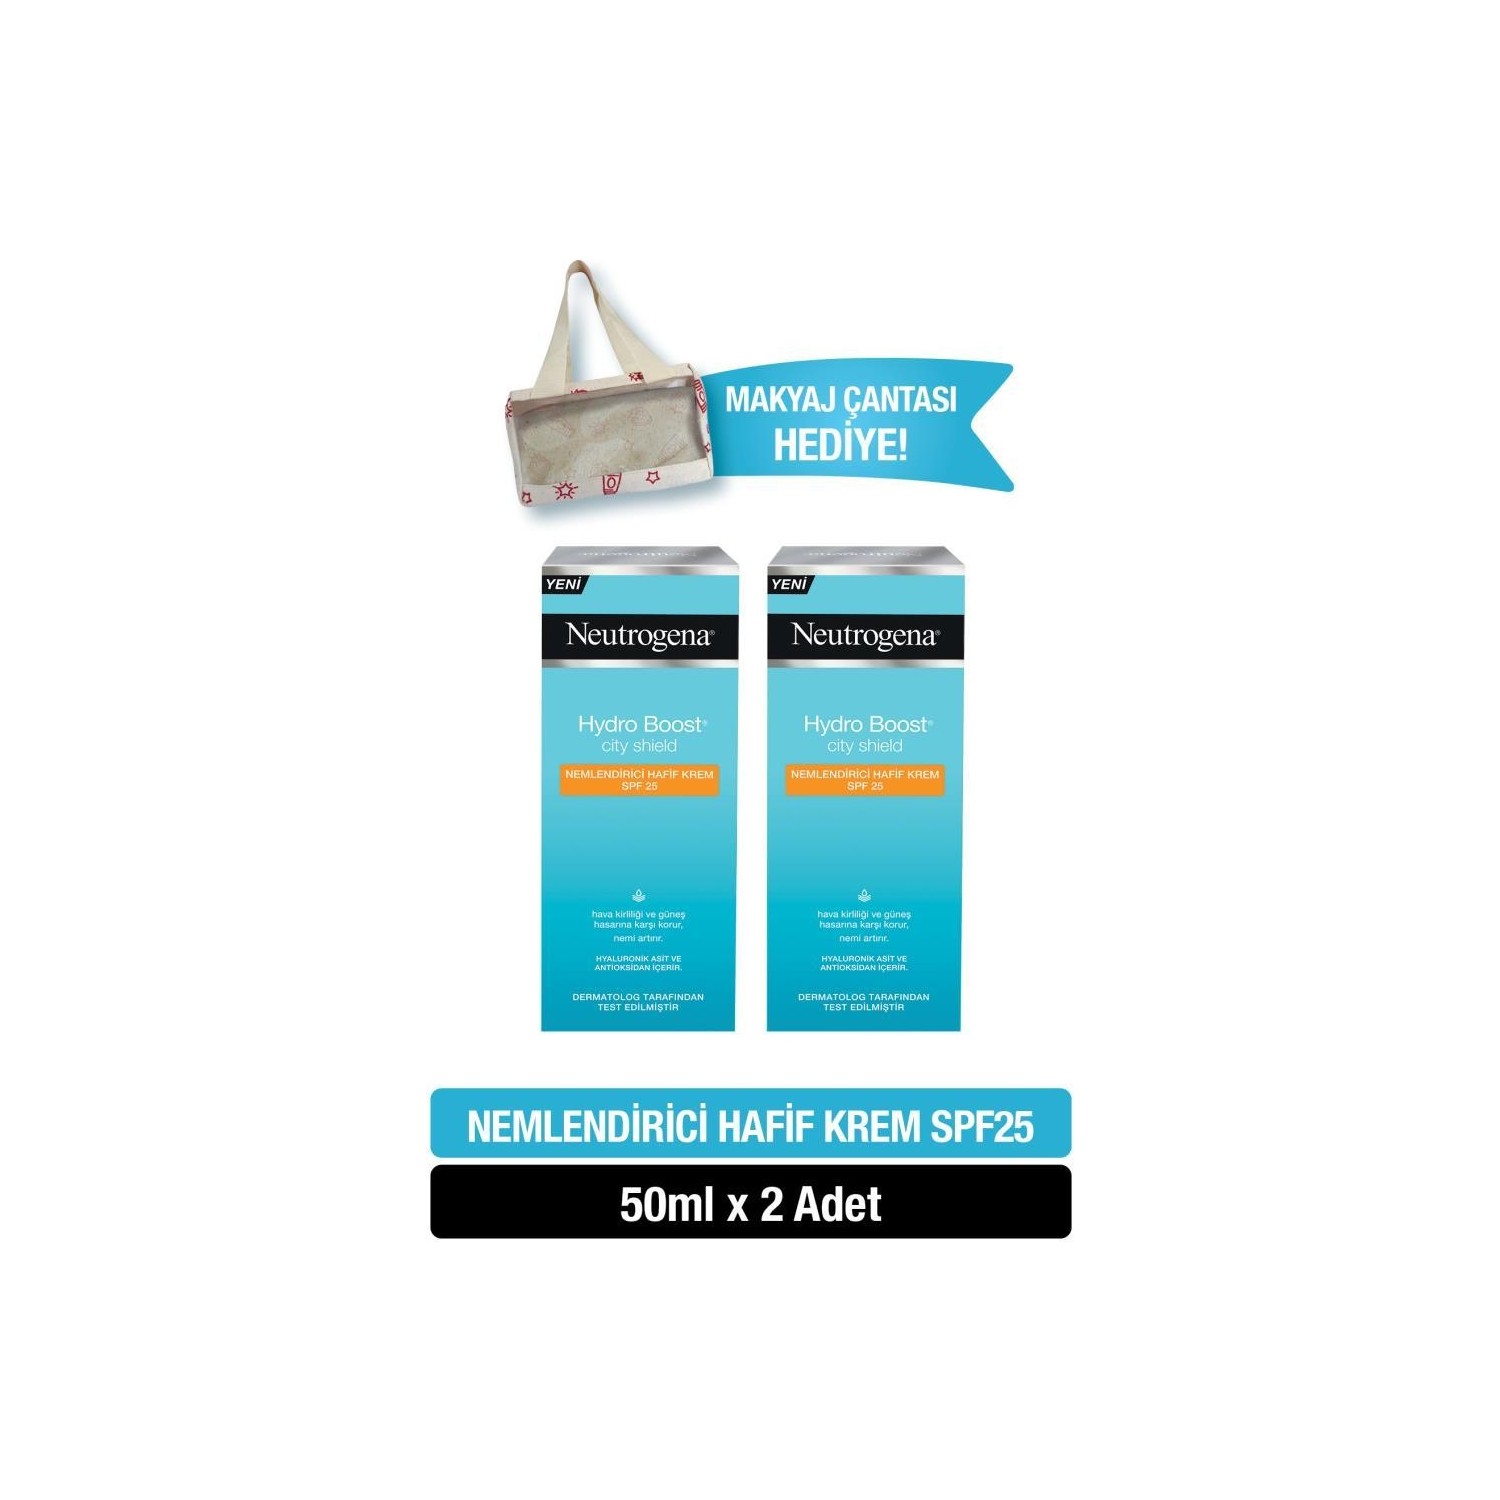 цена Крем Neutrogena Hydro Boost City Shield SPF25 увлажняющий с солнцезащитным кремом для лица, 2 упаковки по 50 мл